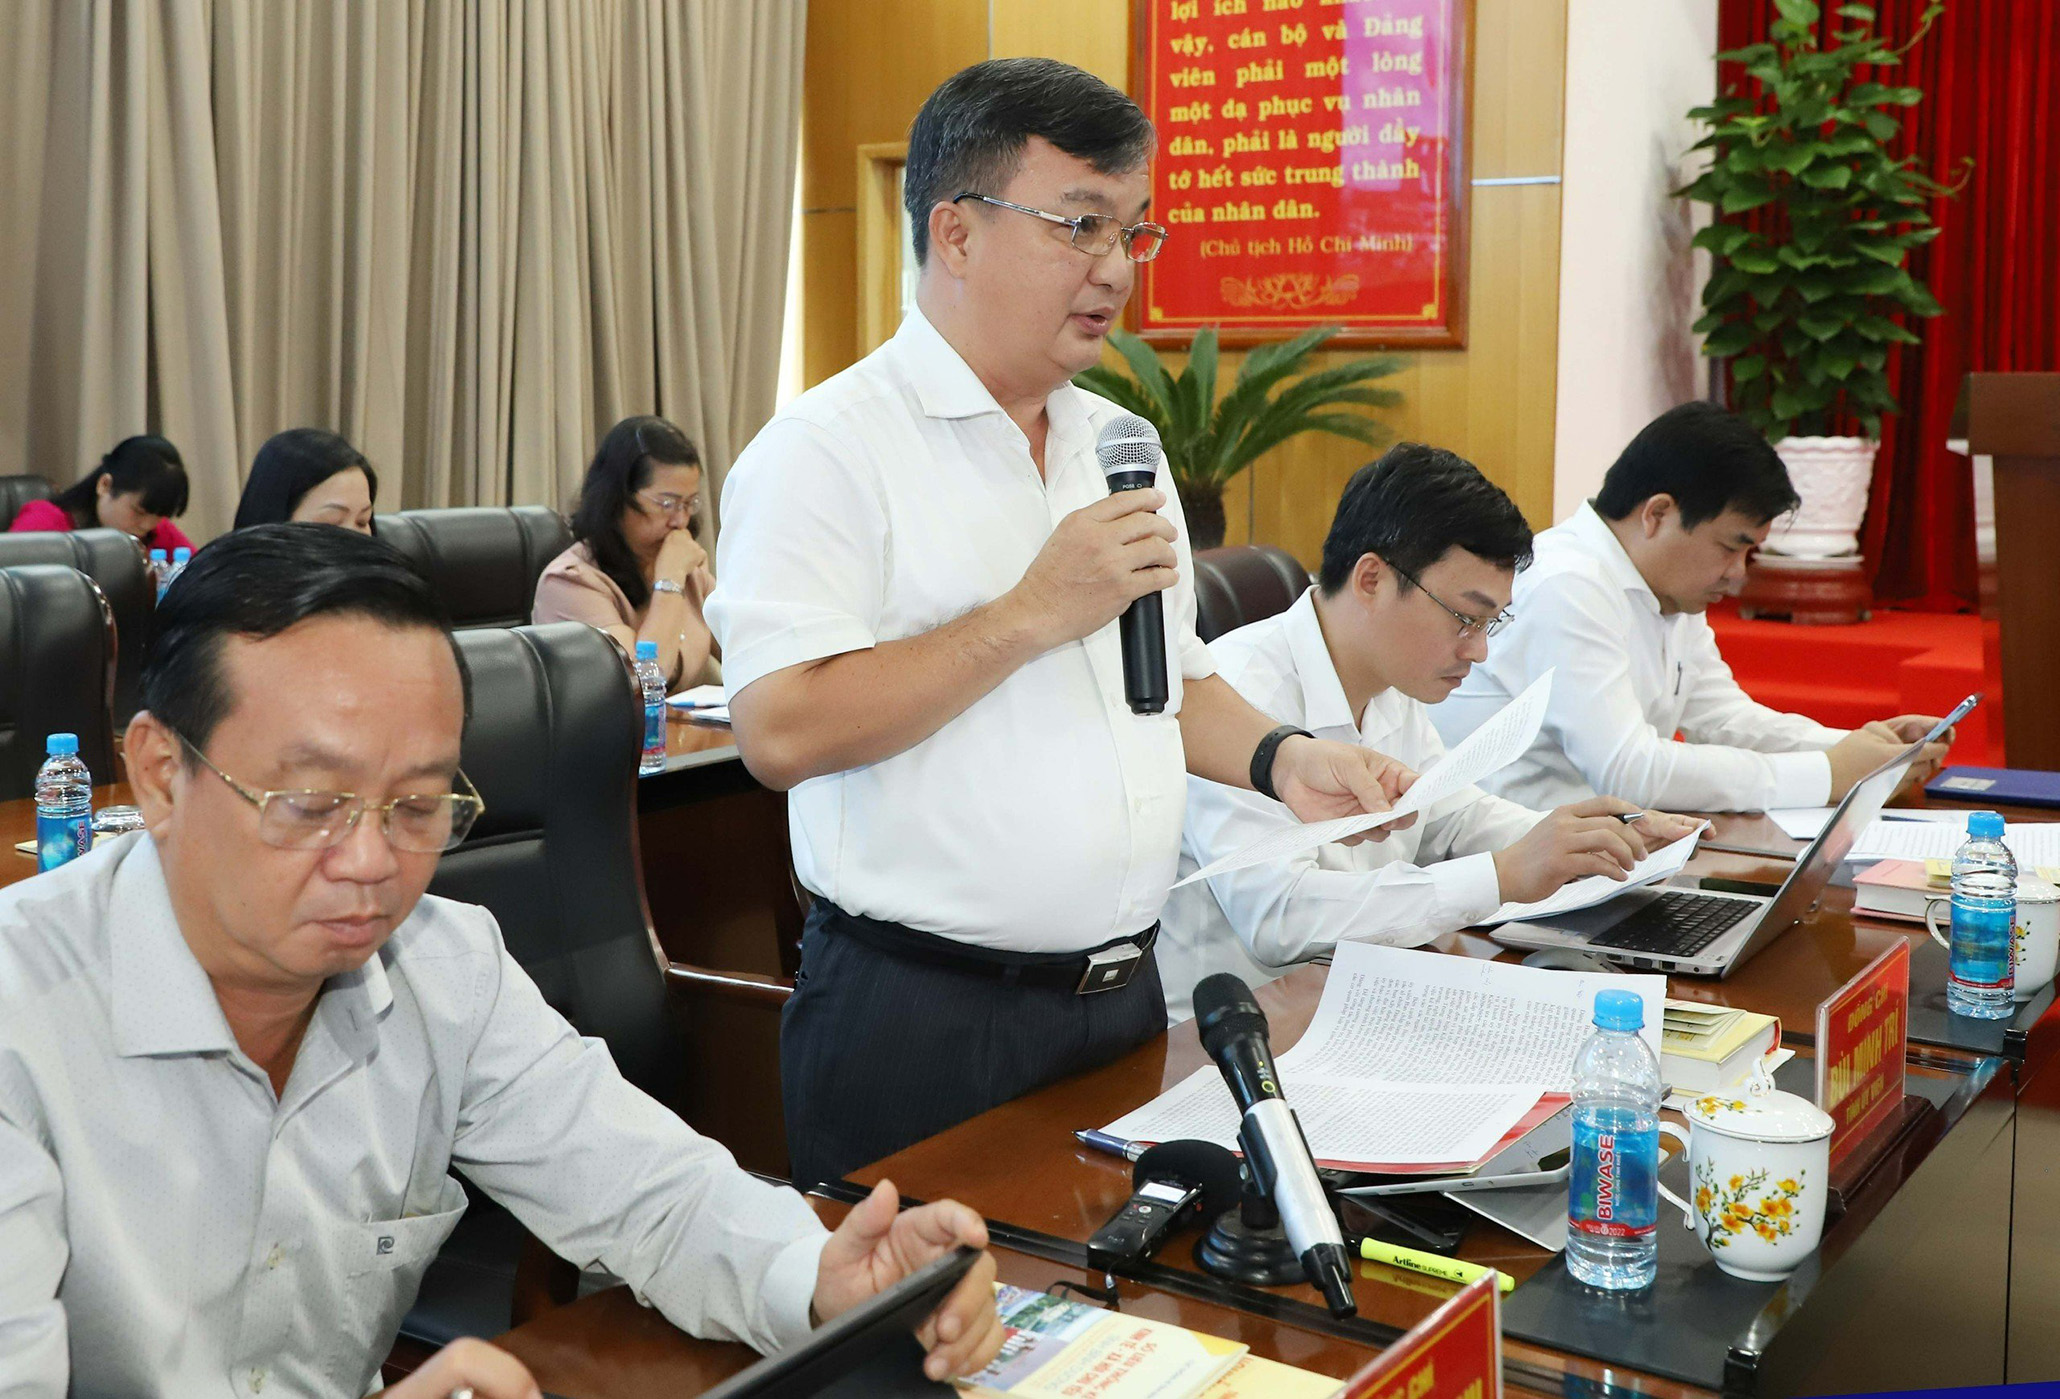 Đồng chí Trương Thị Bích Hạnh - Trưởng Ban Tuyên giáo Tỉnh ủy Bình Dương phát biểu tại Hội nghị.